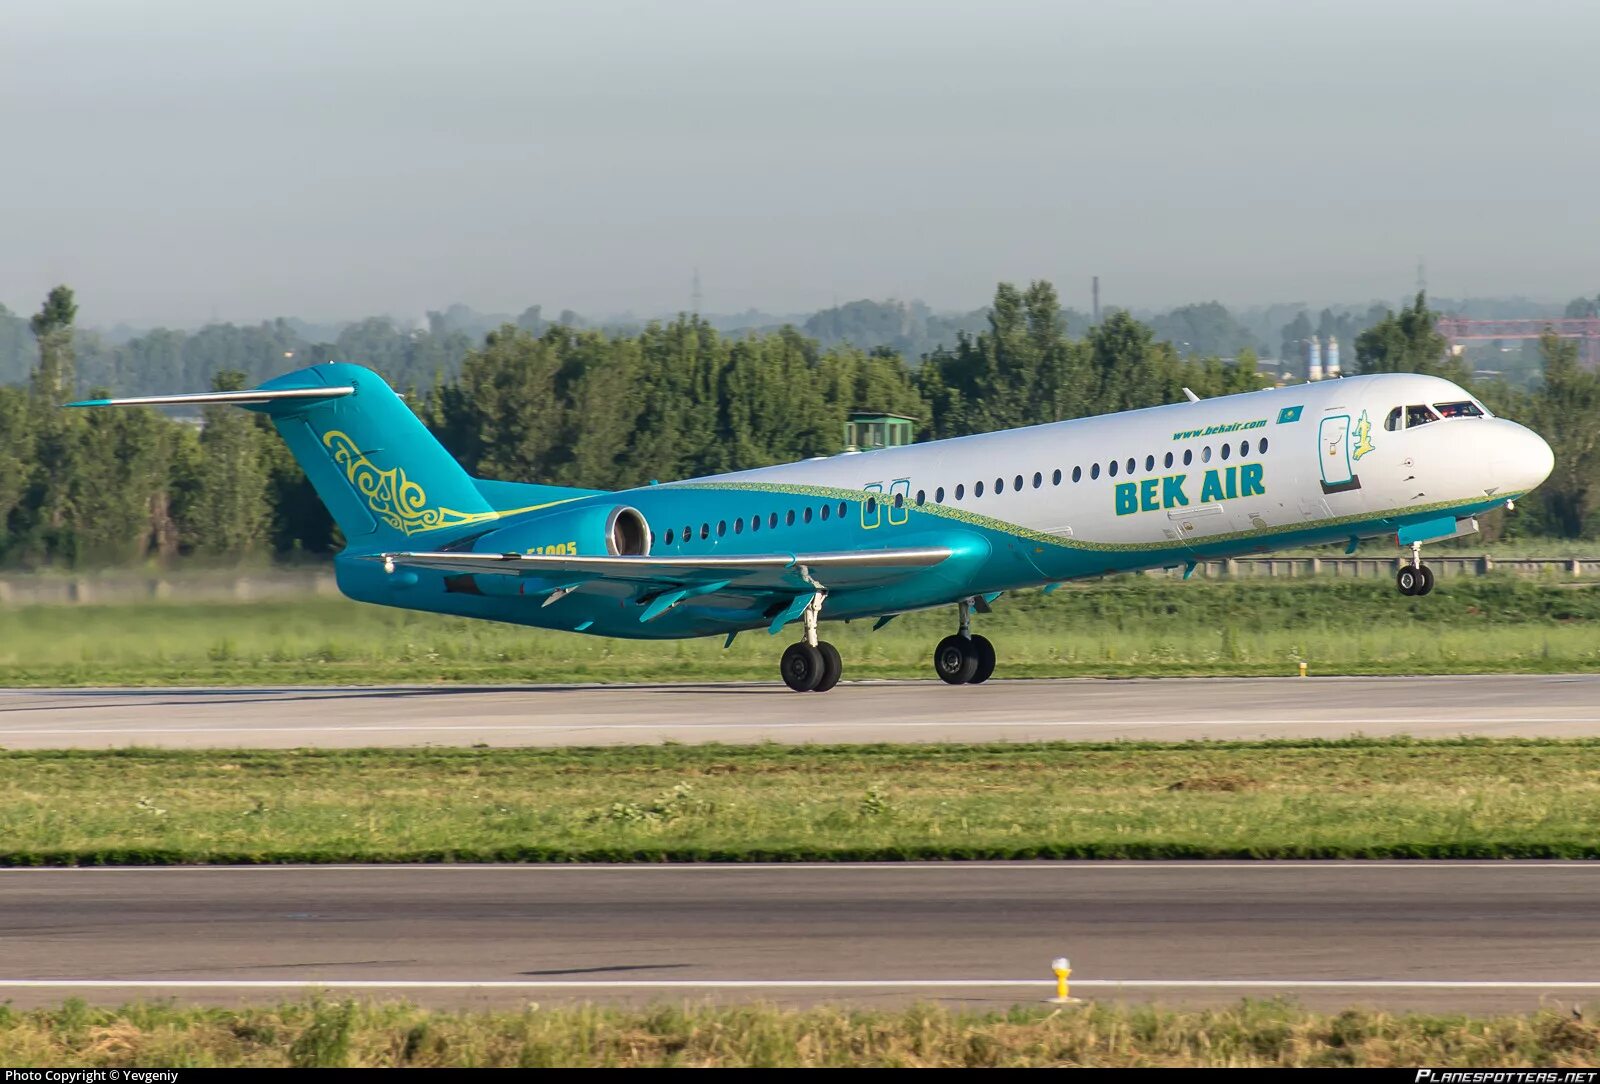 Купить самолет в казахстане. Фоккер 100. Fokker bek Air. Авиалайнер Fokker 100. Bek Air авиакомпании Казахстана.